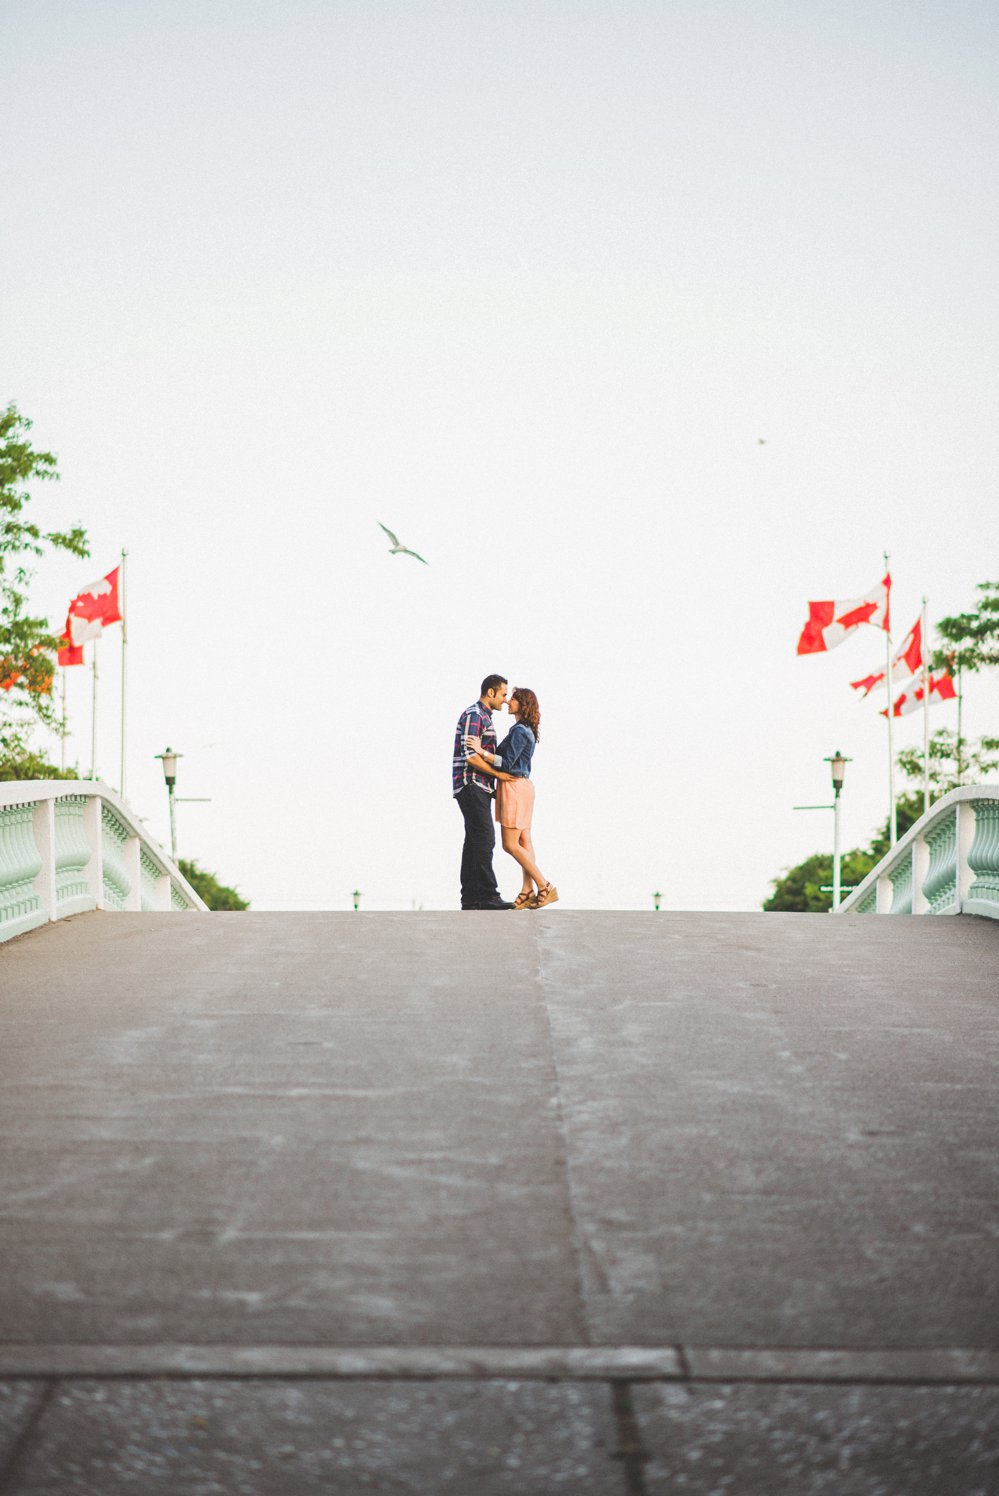 Toronto Island Engagement Photos - Olive Photography